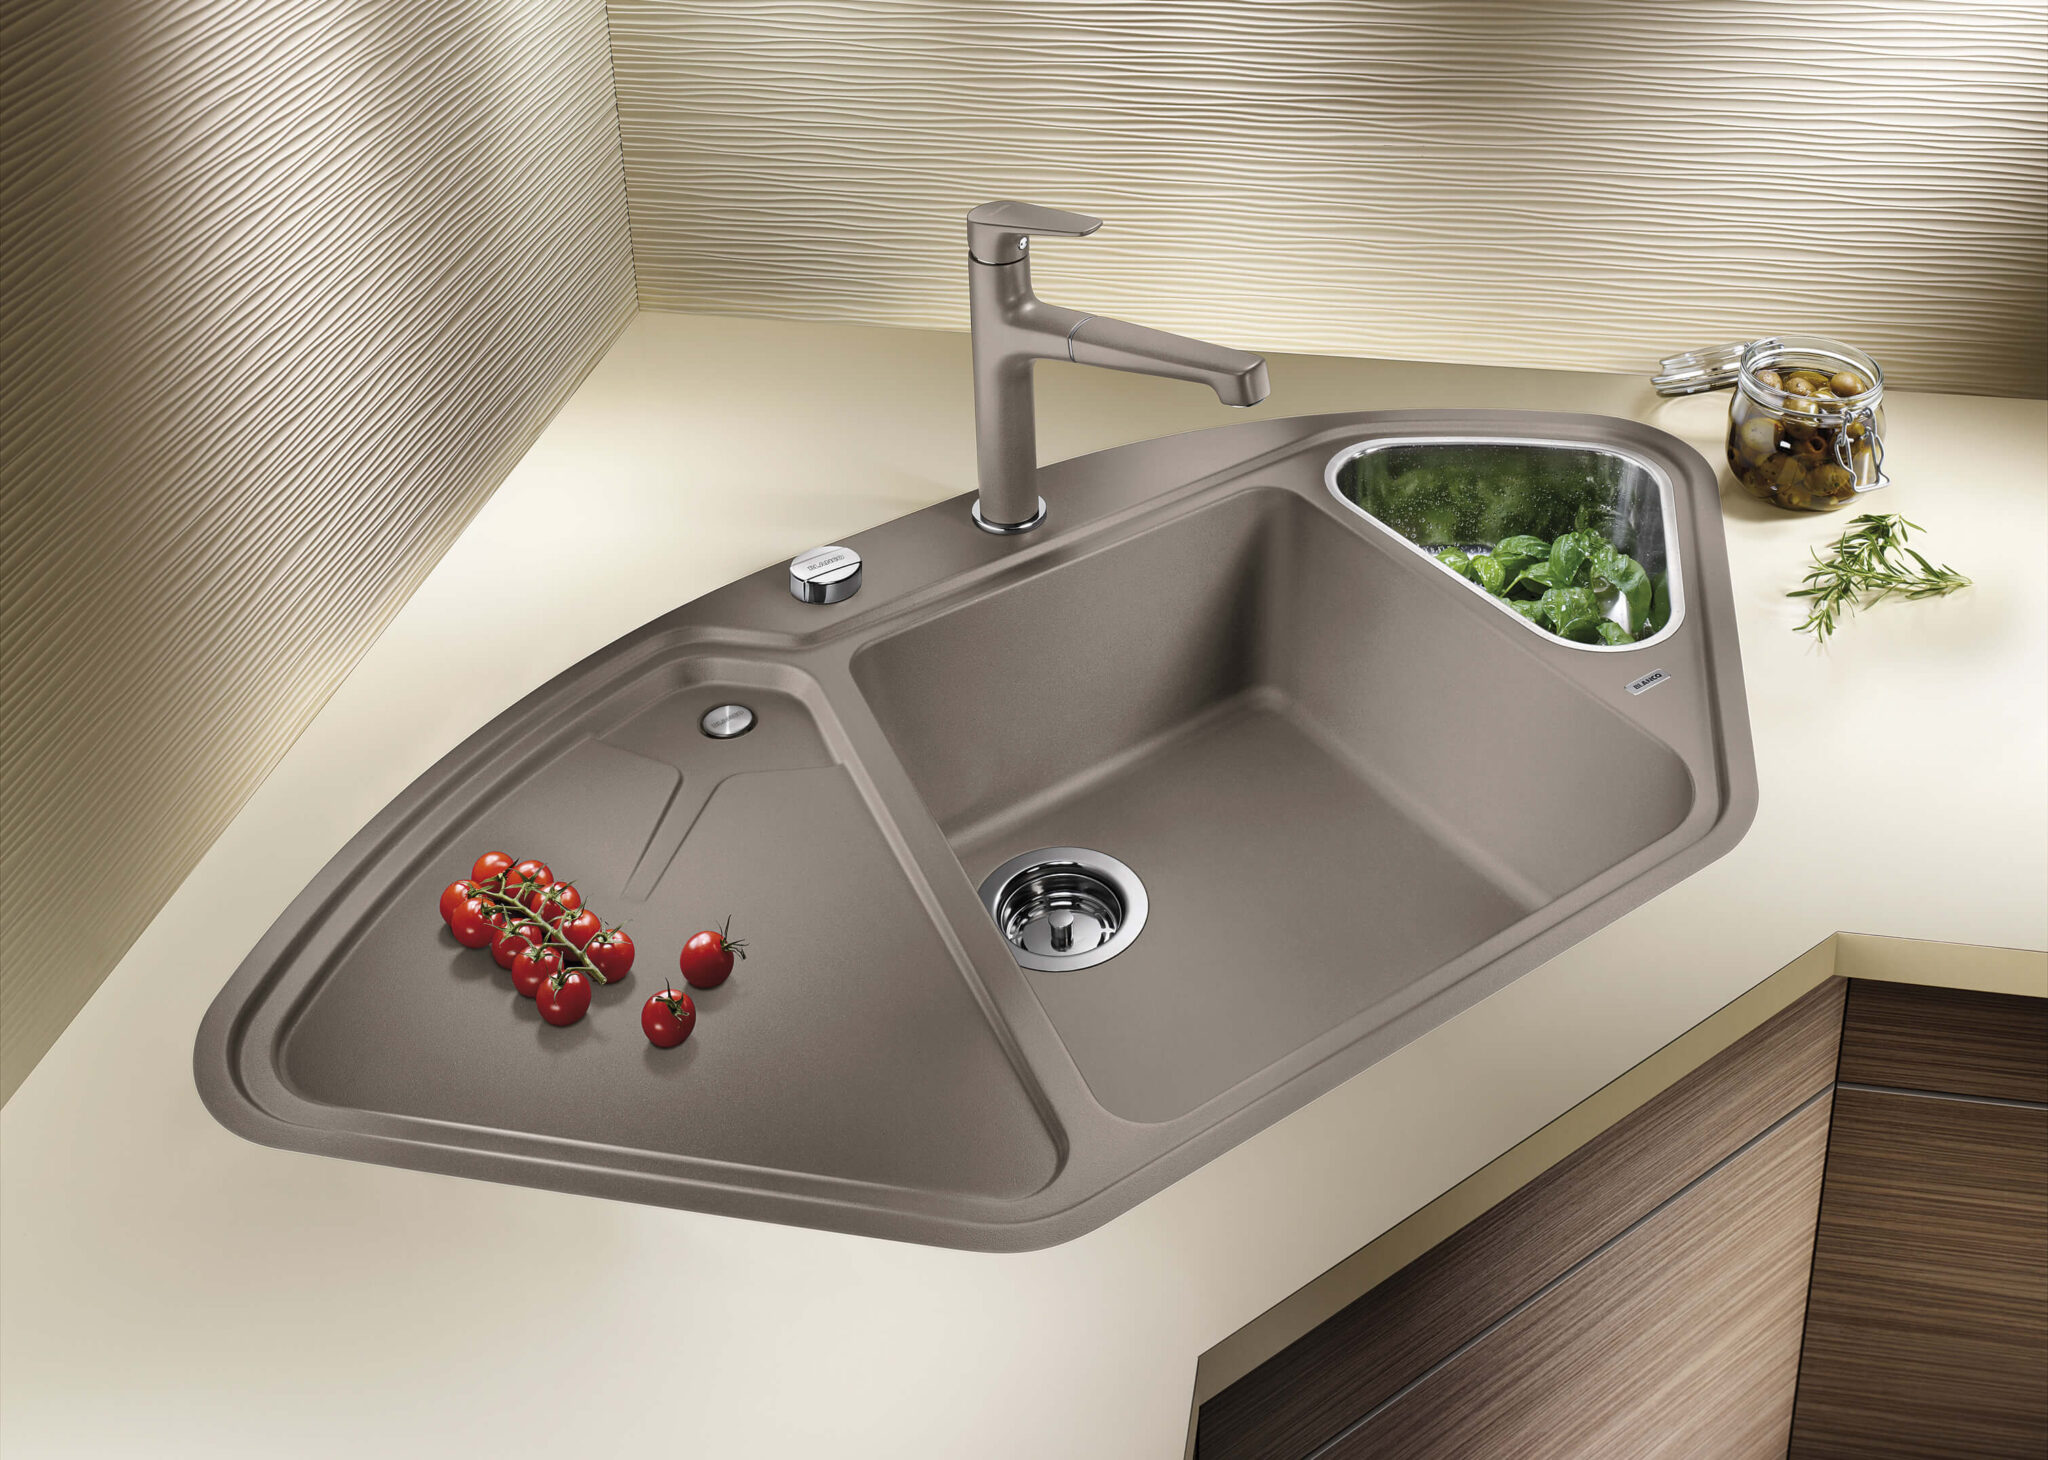 kitchen design placing sink in corner